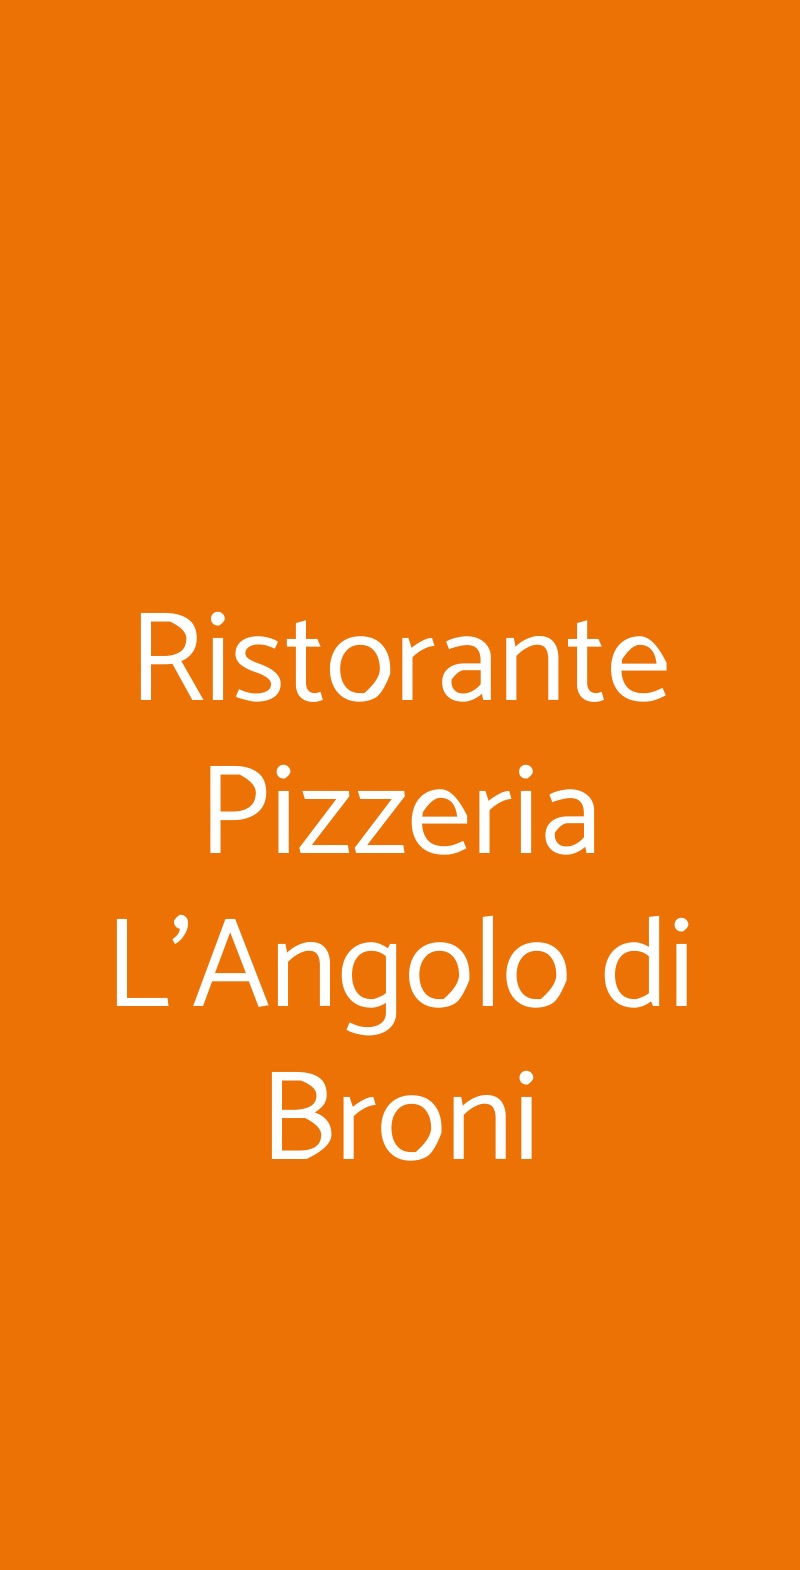 Ristorante Pizzeria L'Angolo di Broni Broni menù 1 pagina